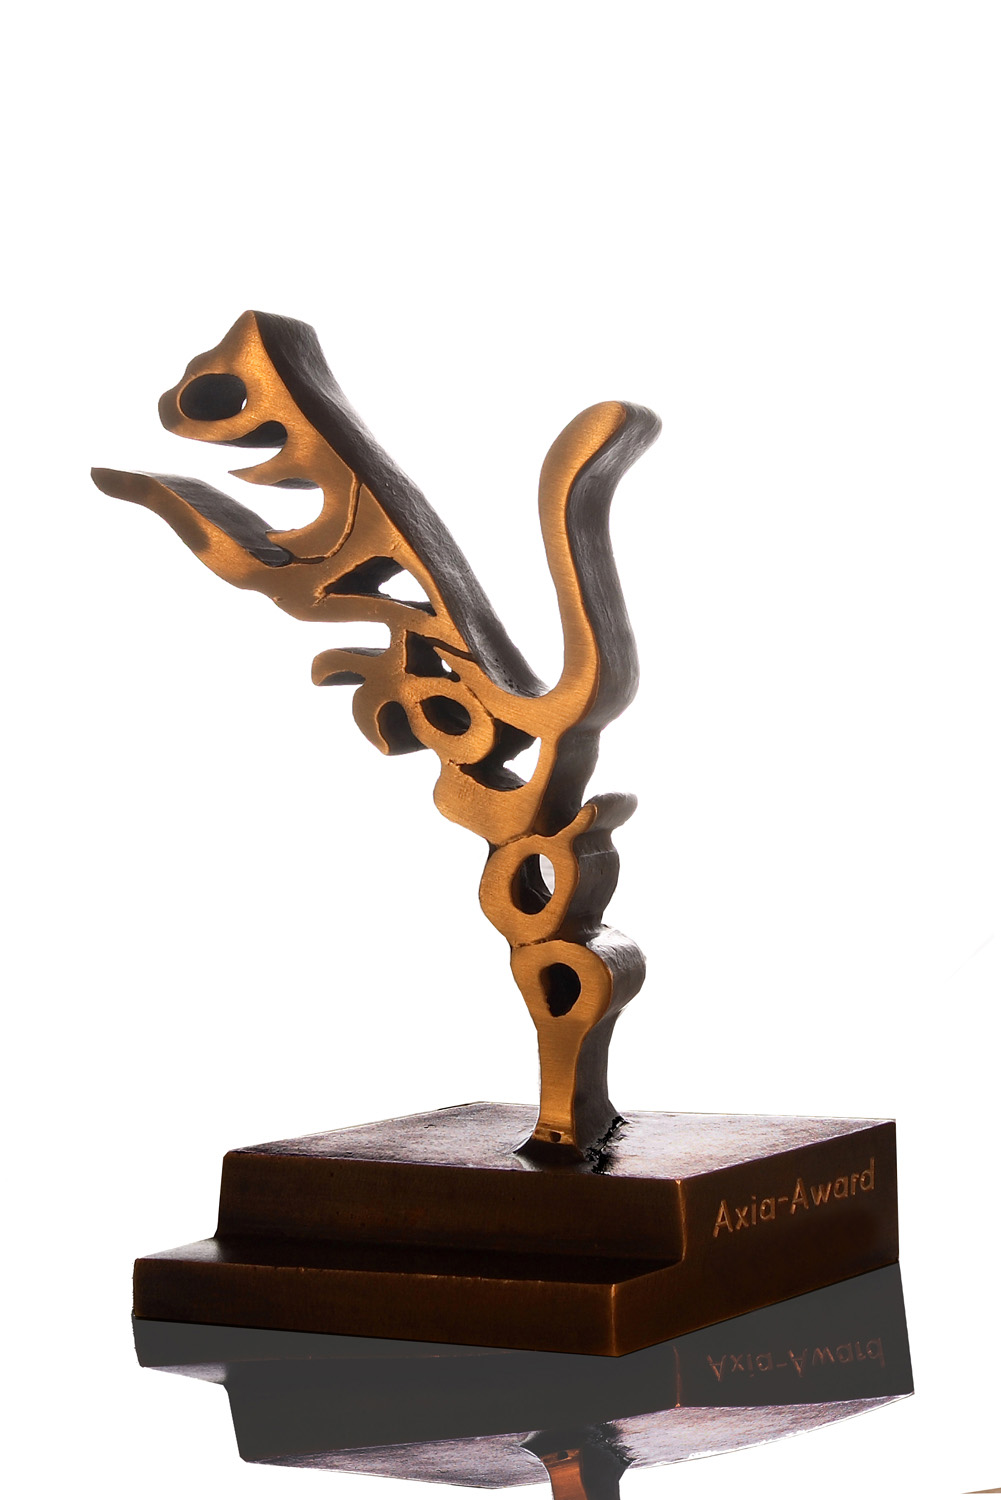 RÖHM GmbH mit „Axia-Award“ ausgezeichnet